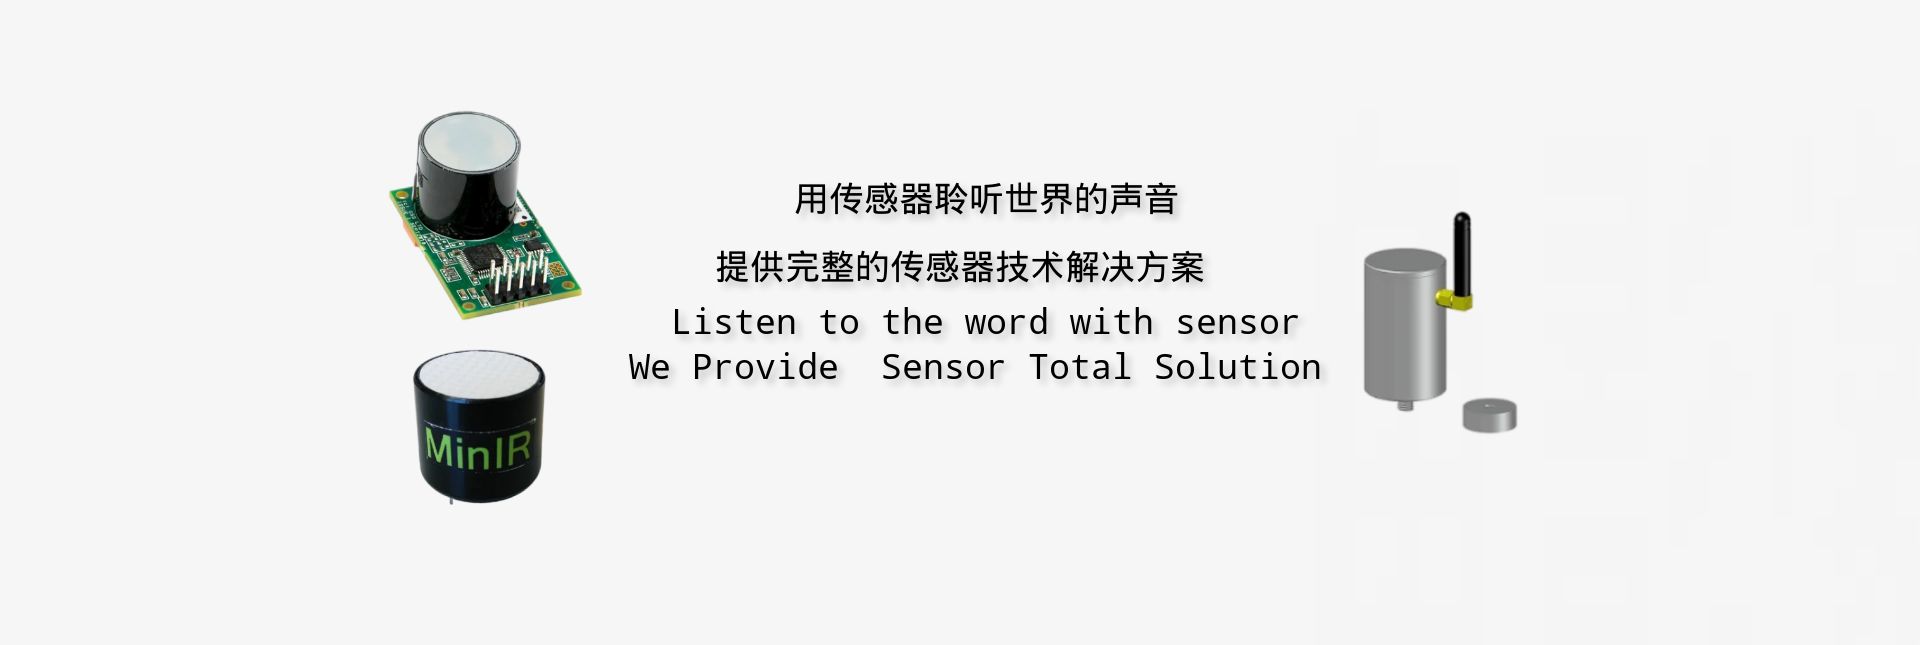 We Provide  Sensor Total Solution